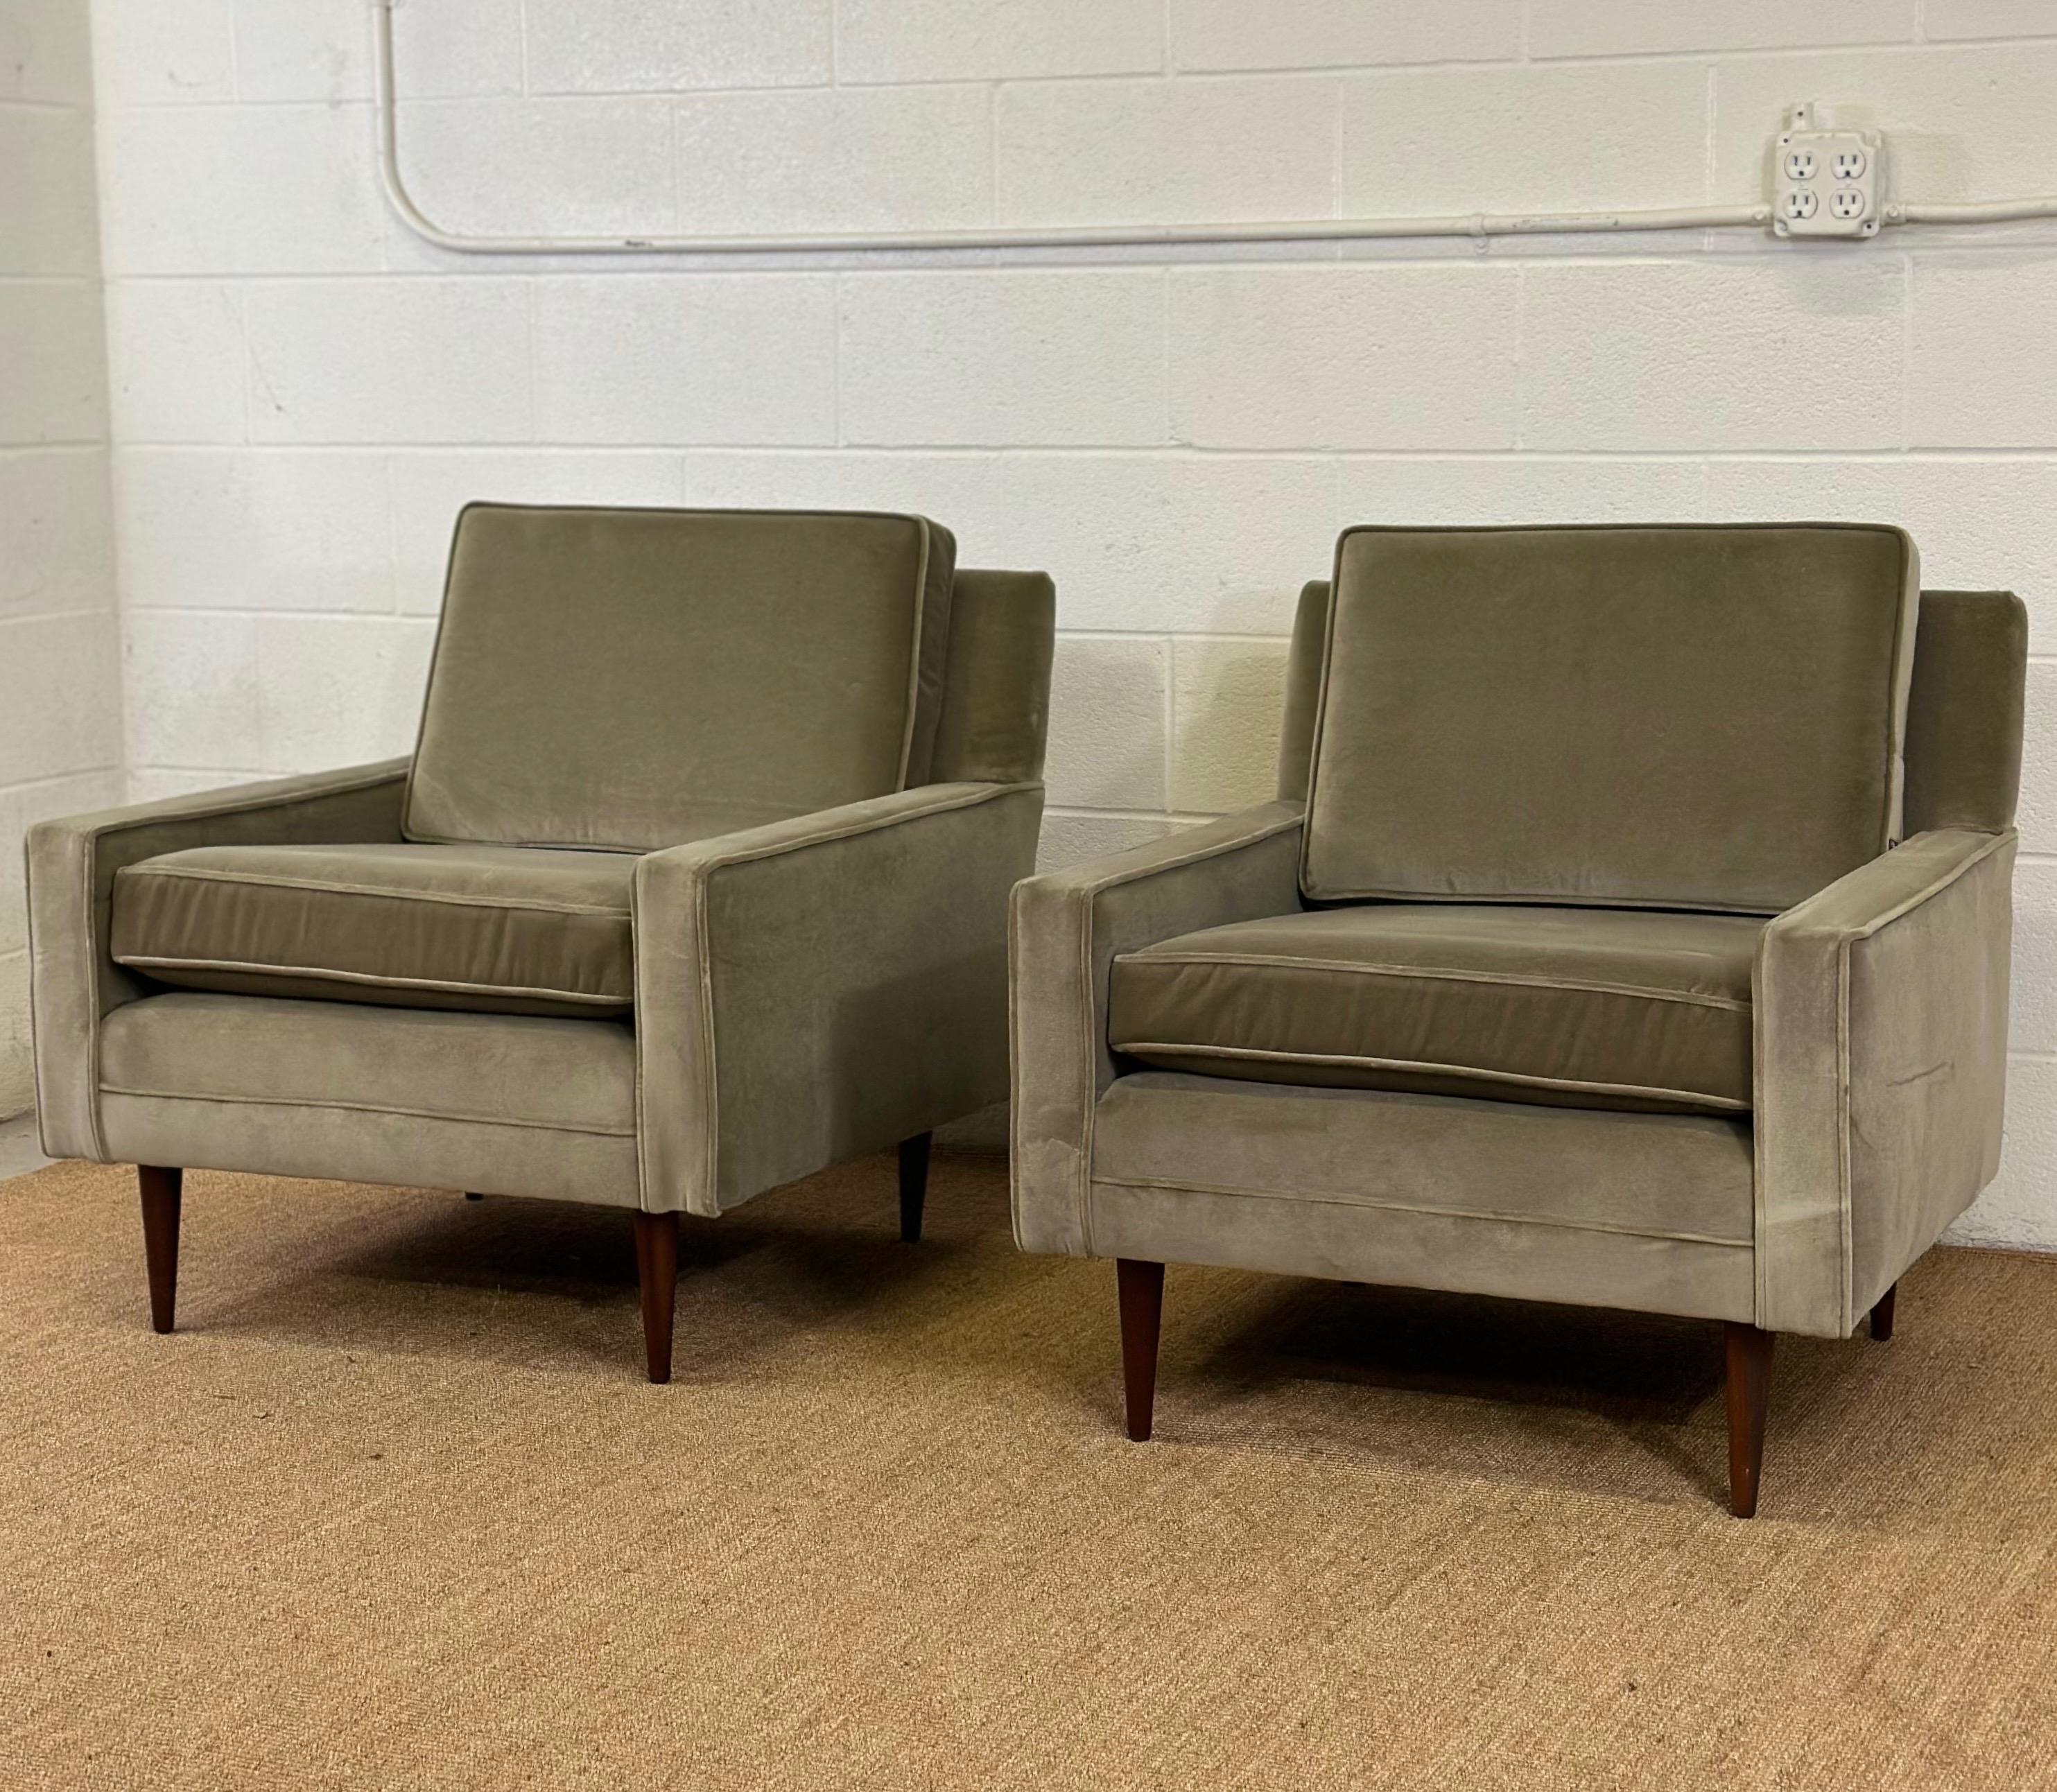 Nous avons le plaisir de vous proposer une superbe paire de fauteuils Vintage Mid-Century Modern, datant des années 1950.  Cet ensemble se distingue par sa remarquable silhouette linéaire et a été magnifiquement retapissé pour offrir à la fois style